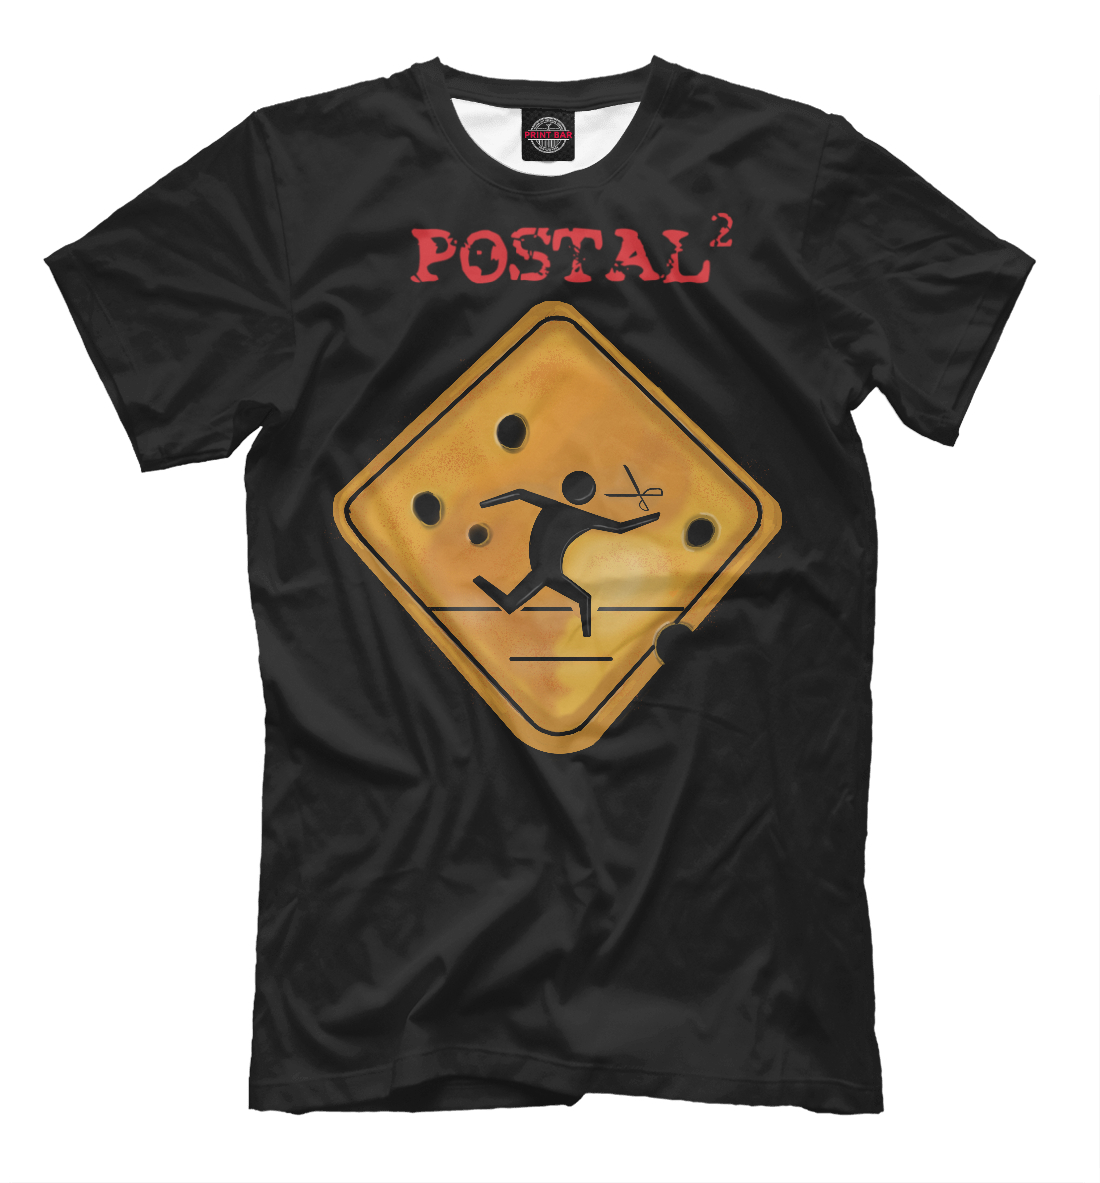 Футболка Postal для мужчин, артикул: RPG-326928-fut-2mp